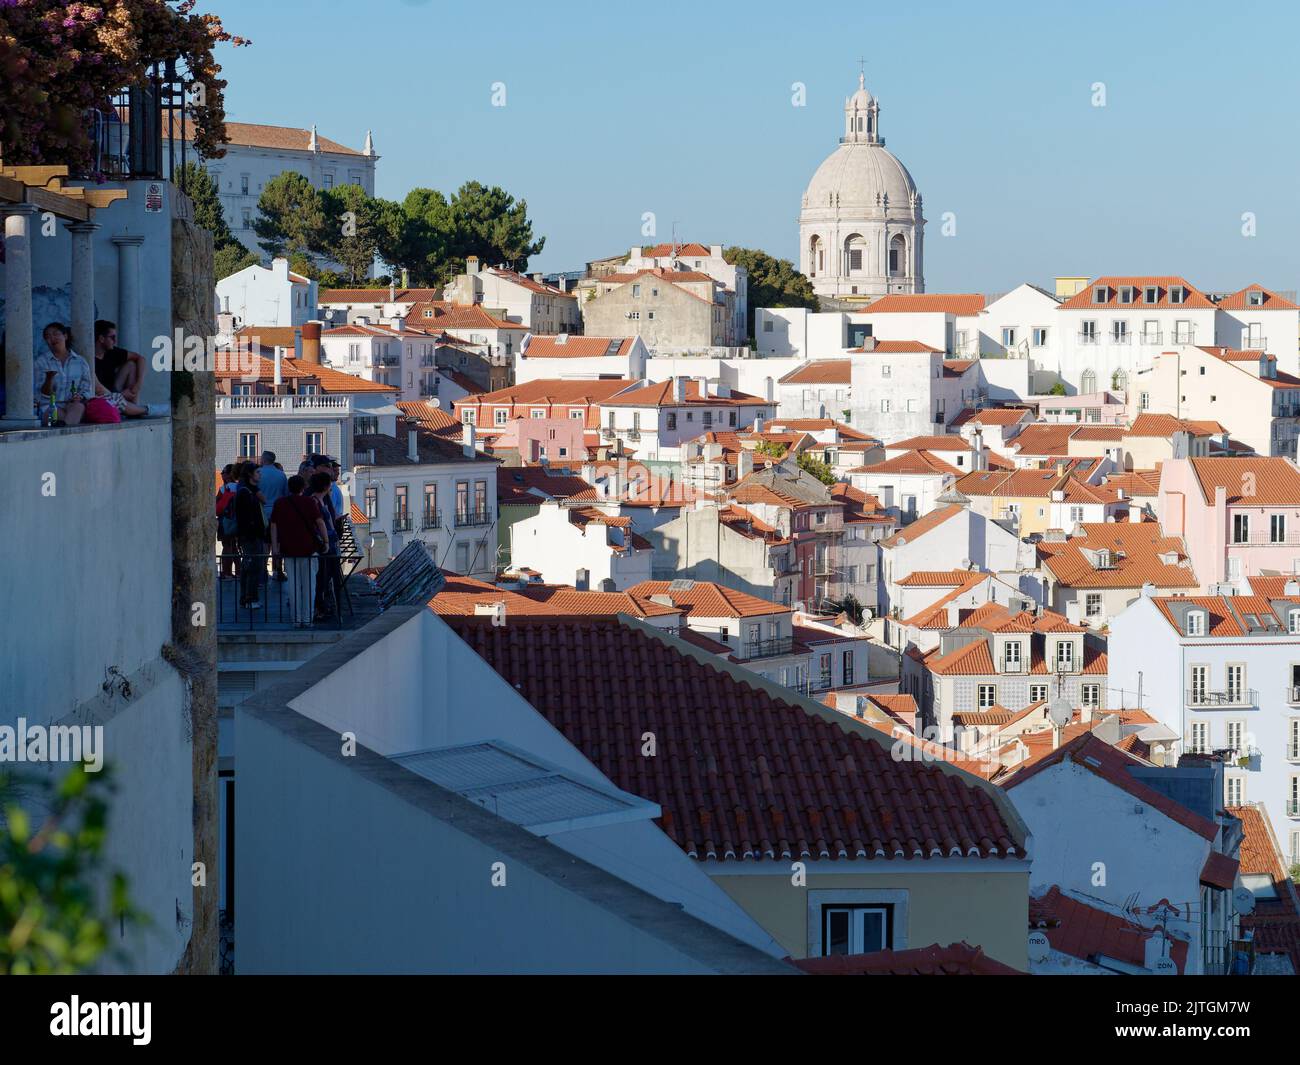 Punto di osservazione Miradouro de Santa Luzia a Lisbona, Portogallo, attraverso i tetti della città, mentre i turisti godono la vista in una serata estiva. Foto Stock